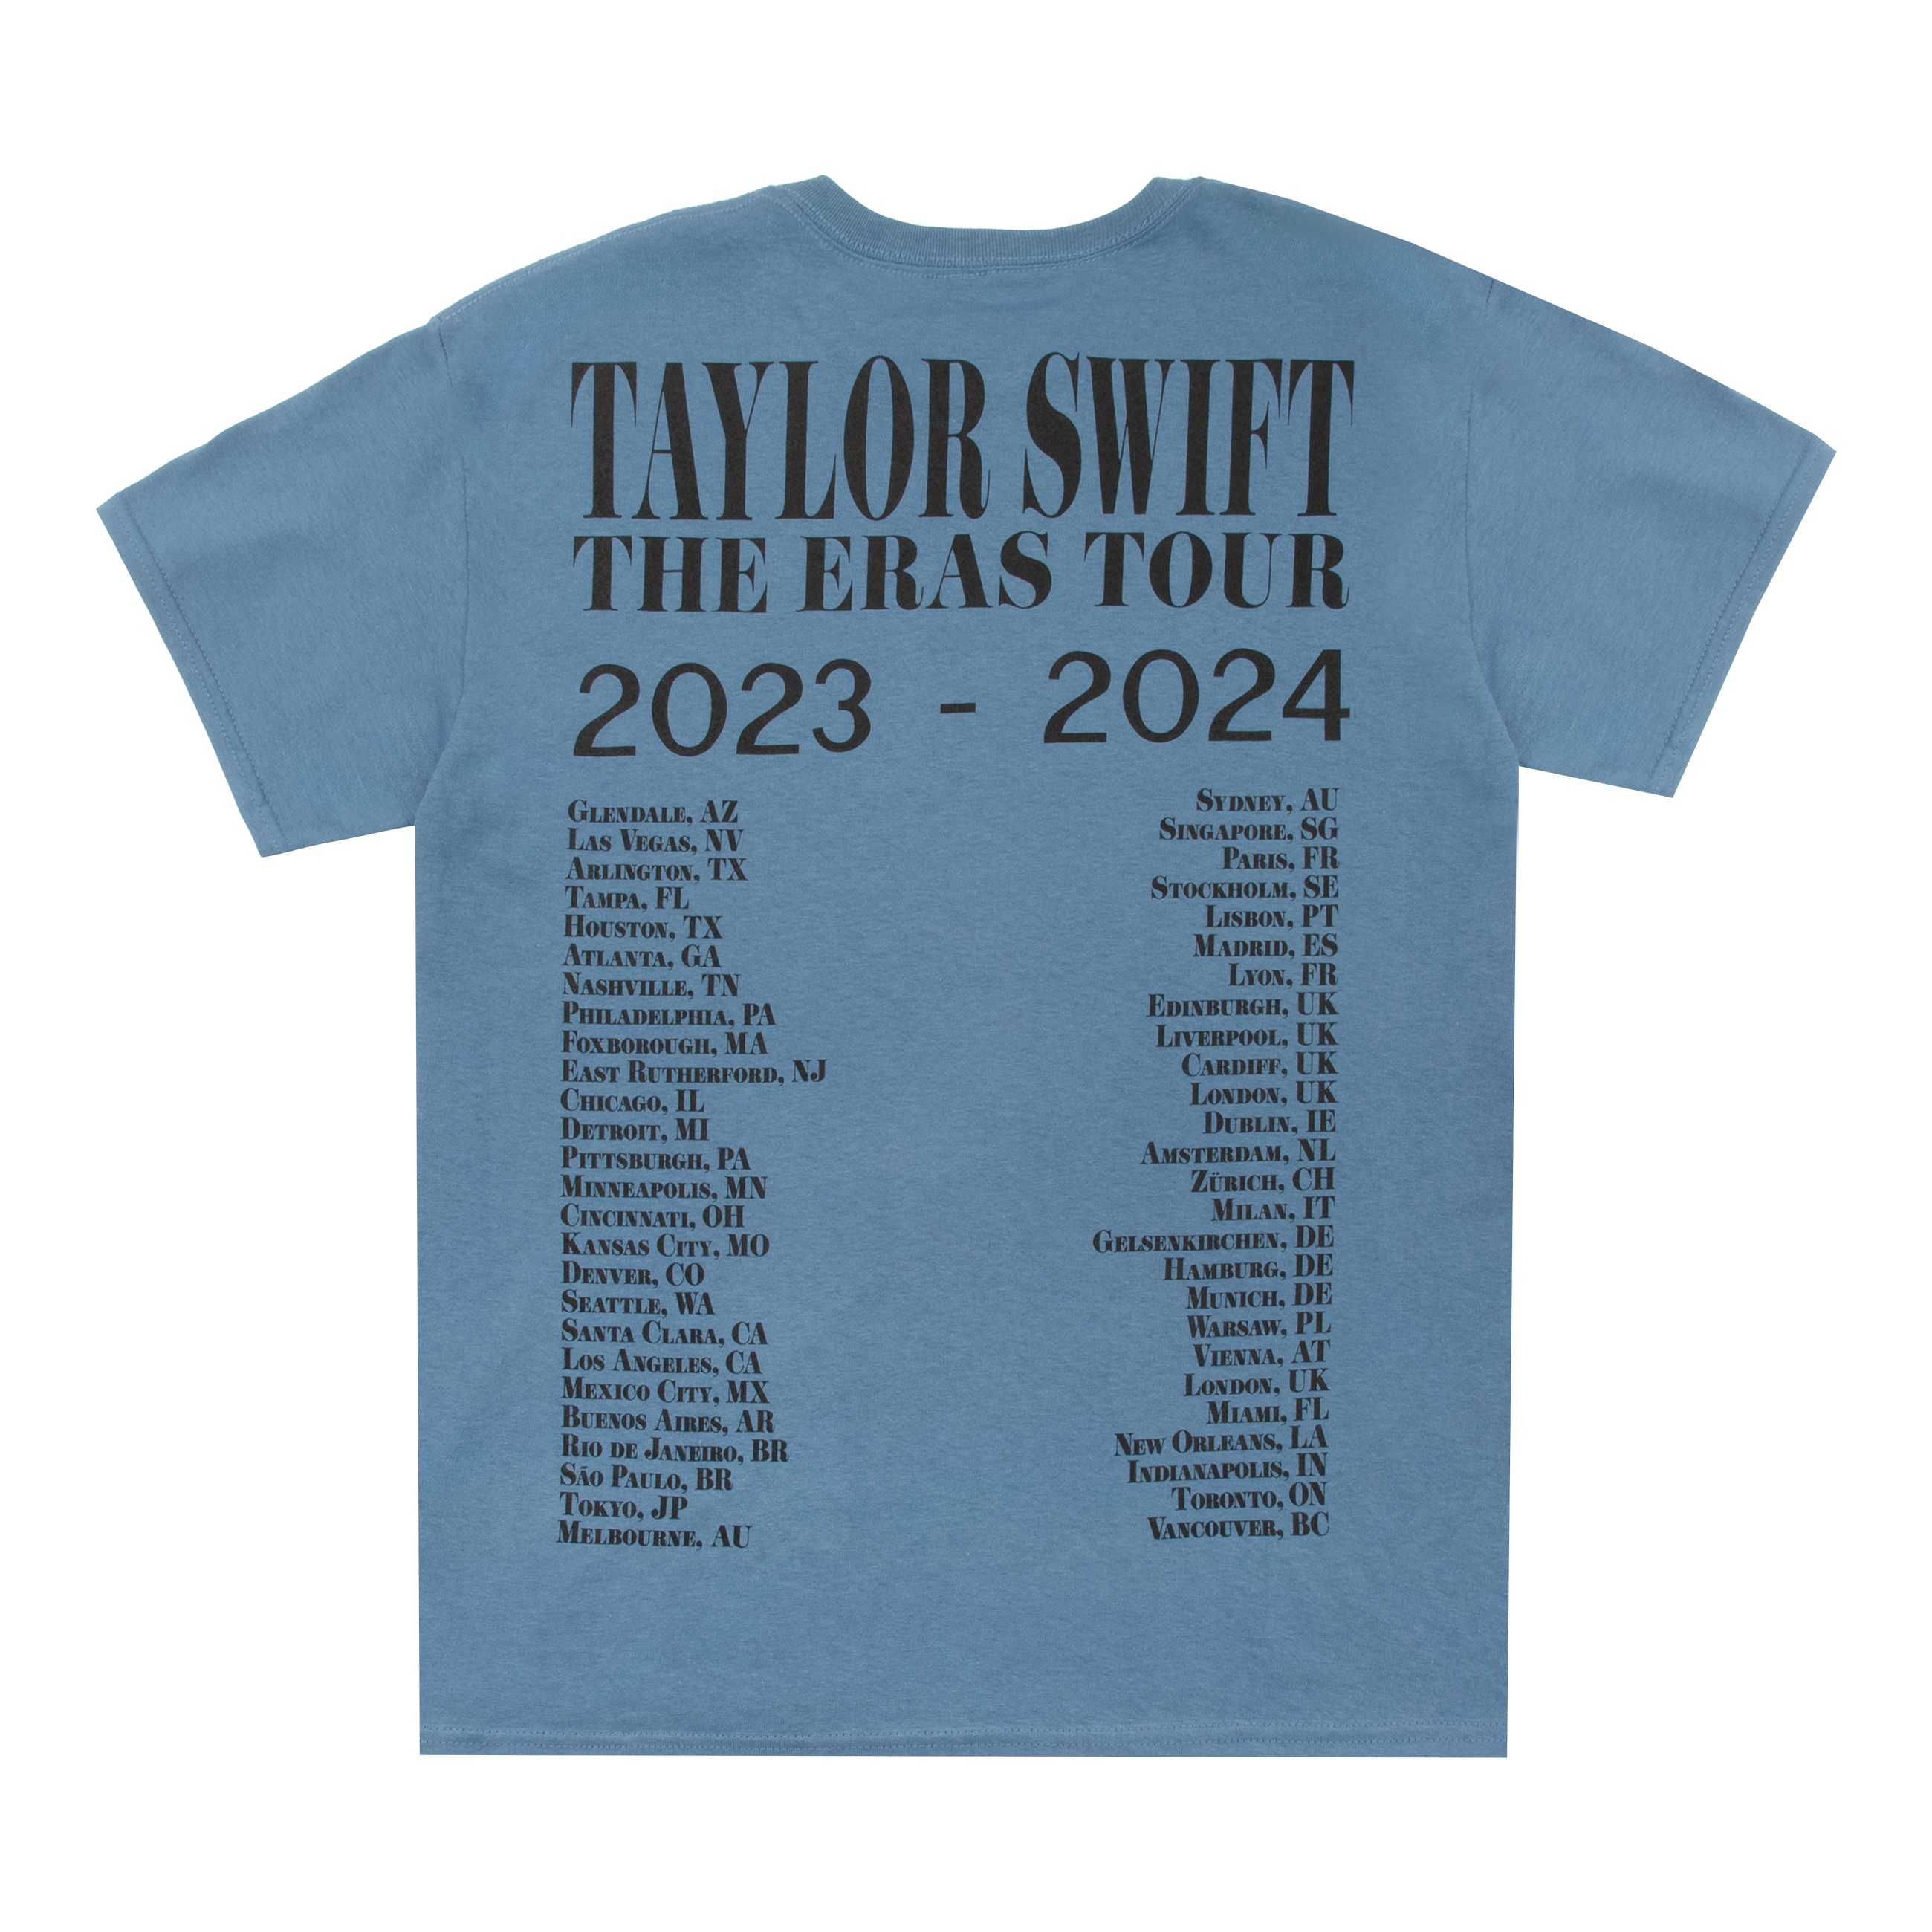 https://images.bravado.de/prod/product-assets/product-asset-data/taylor-swift/taylor-swift/products/507519/web/443626/image-thumb__443626__3000x3000_original/Taylor-Swift-Taylor-Swift-The-Eras-Tour-Blue-T-Shirt-T-Shirt-blau-507519-443626.cde57b66.png